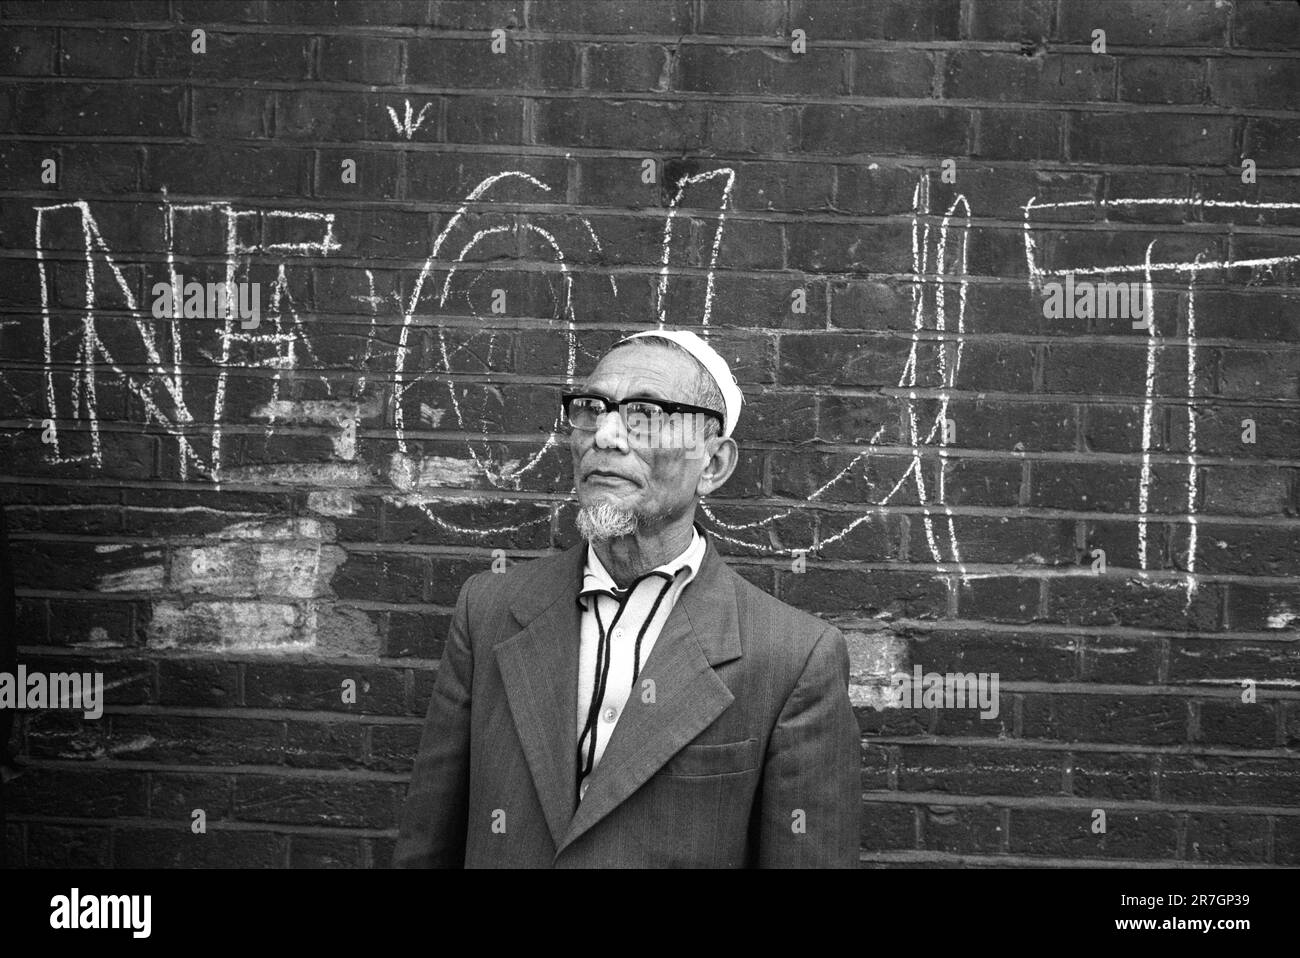 Ein älterer asiatischer Mann, ein Einwanderer in der Gegend, beobachtet das Sonntagmorgen-Leben in BricLane. Das Graffiti "NF OUT" bezieht sich auf die Front National, die versuchte, Unterstützung für ihre Einwanderungspolitik zu gewinnen. Whitechapel, East London, England, ca. 1978. UK 1970S HOMER SYKES Stockfoto